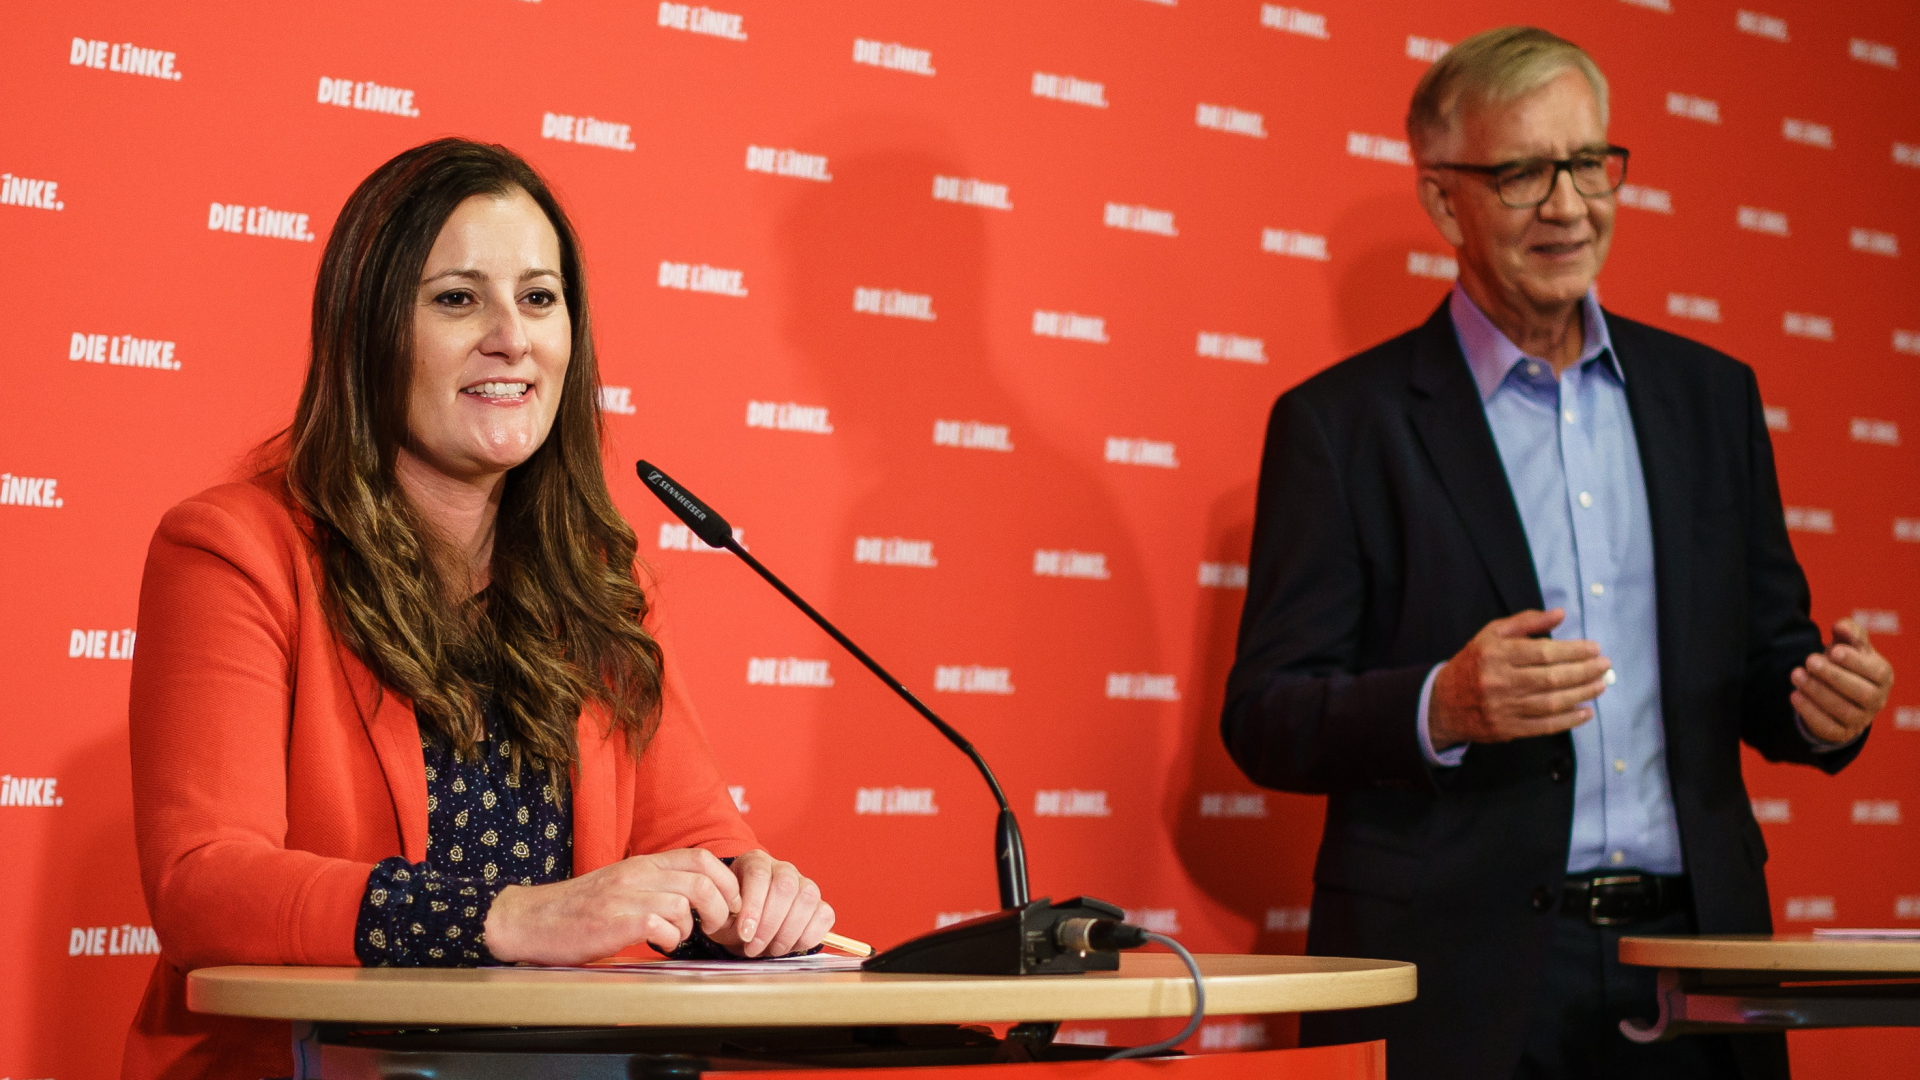 Janine Wissler, Parteivorsitzende der Linken, und Dietmar Bartsch, Linken-Fraktionschef, auf einer Pressekonferenz. | EPA